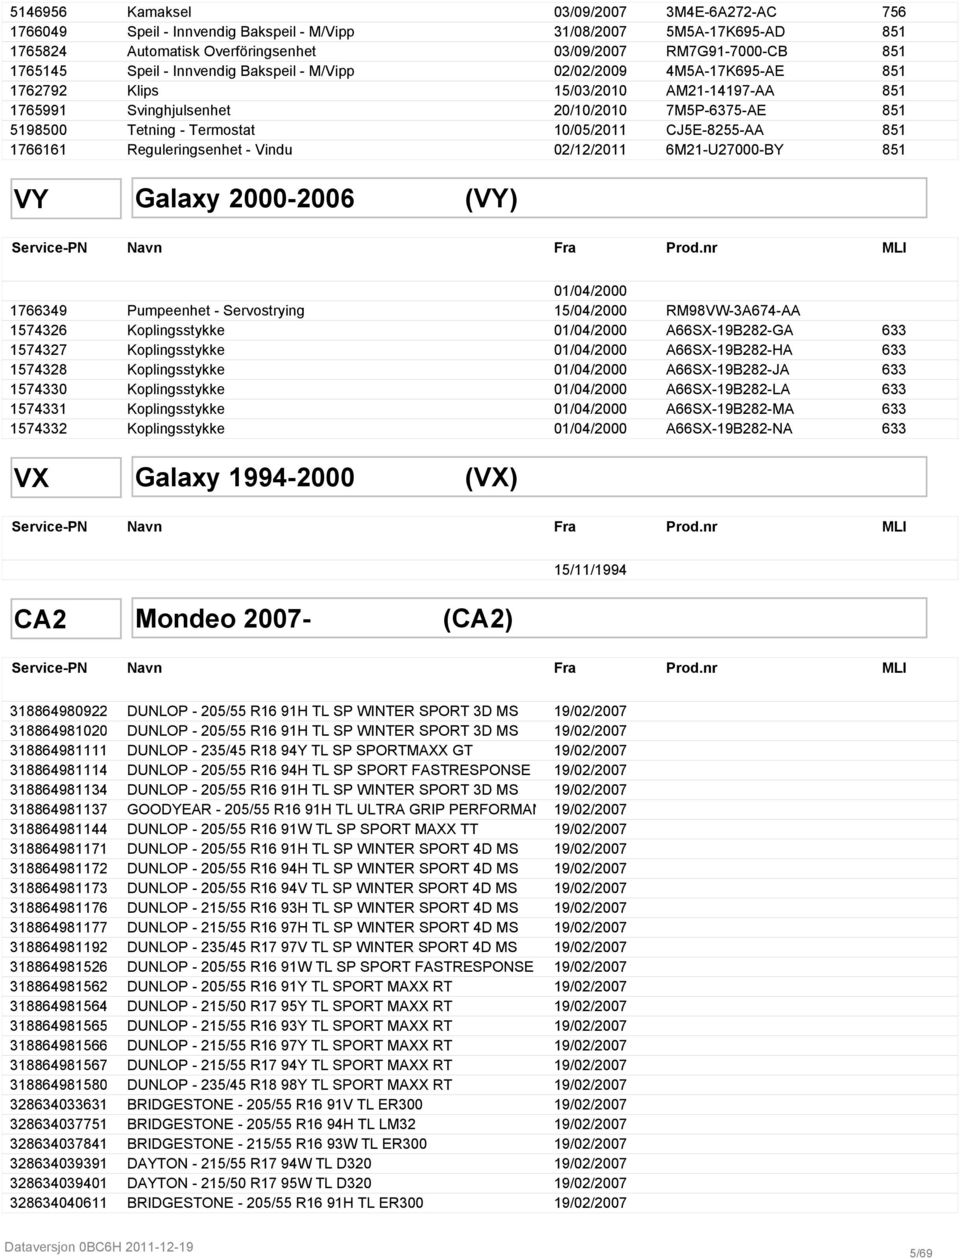 CJ5E-8255-AA 851 1766161 Reguleringsenhet - Vindu 02/12/2011 6M21-U27000-BY 851 VY Galaxy 2000-2006 (VY) Service-PN Navn Fra Prod.